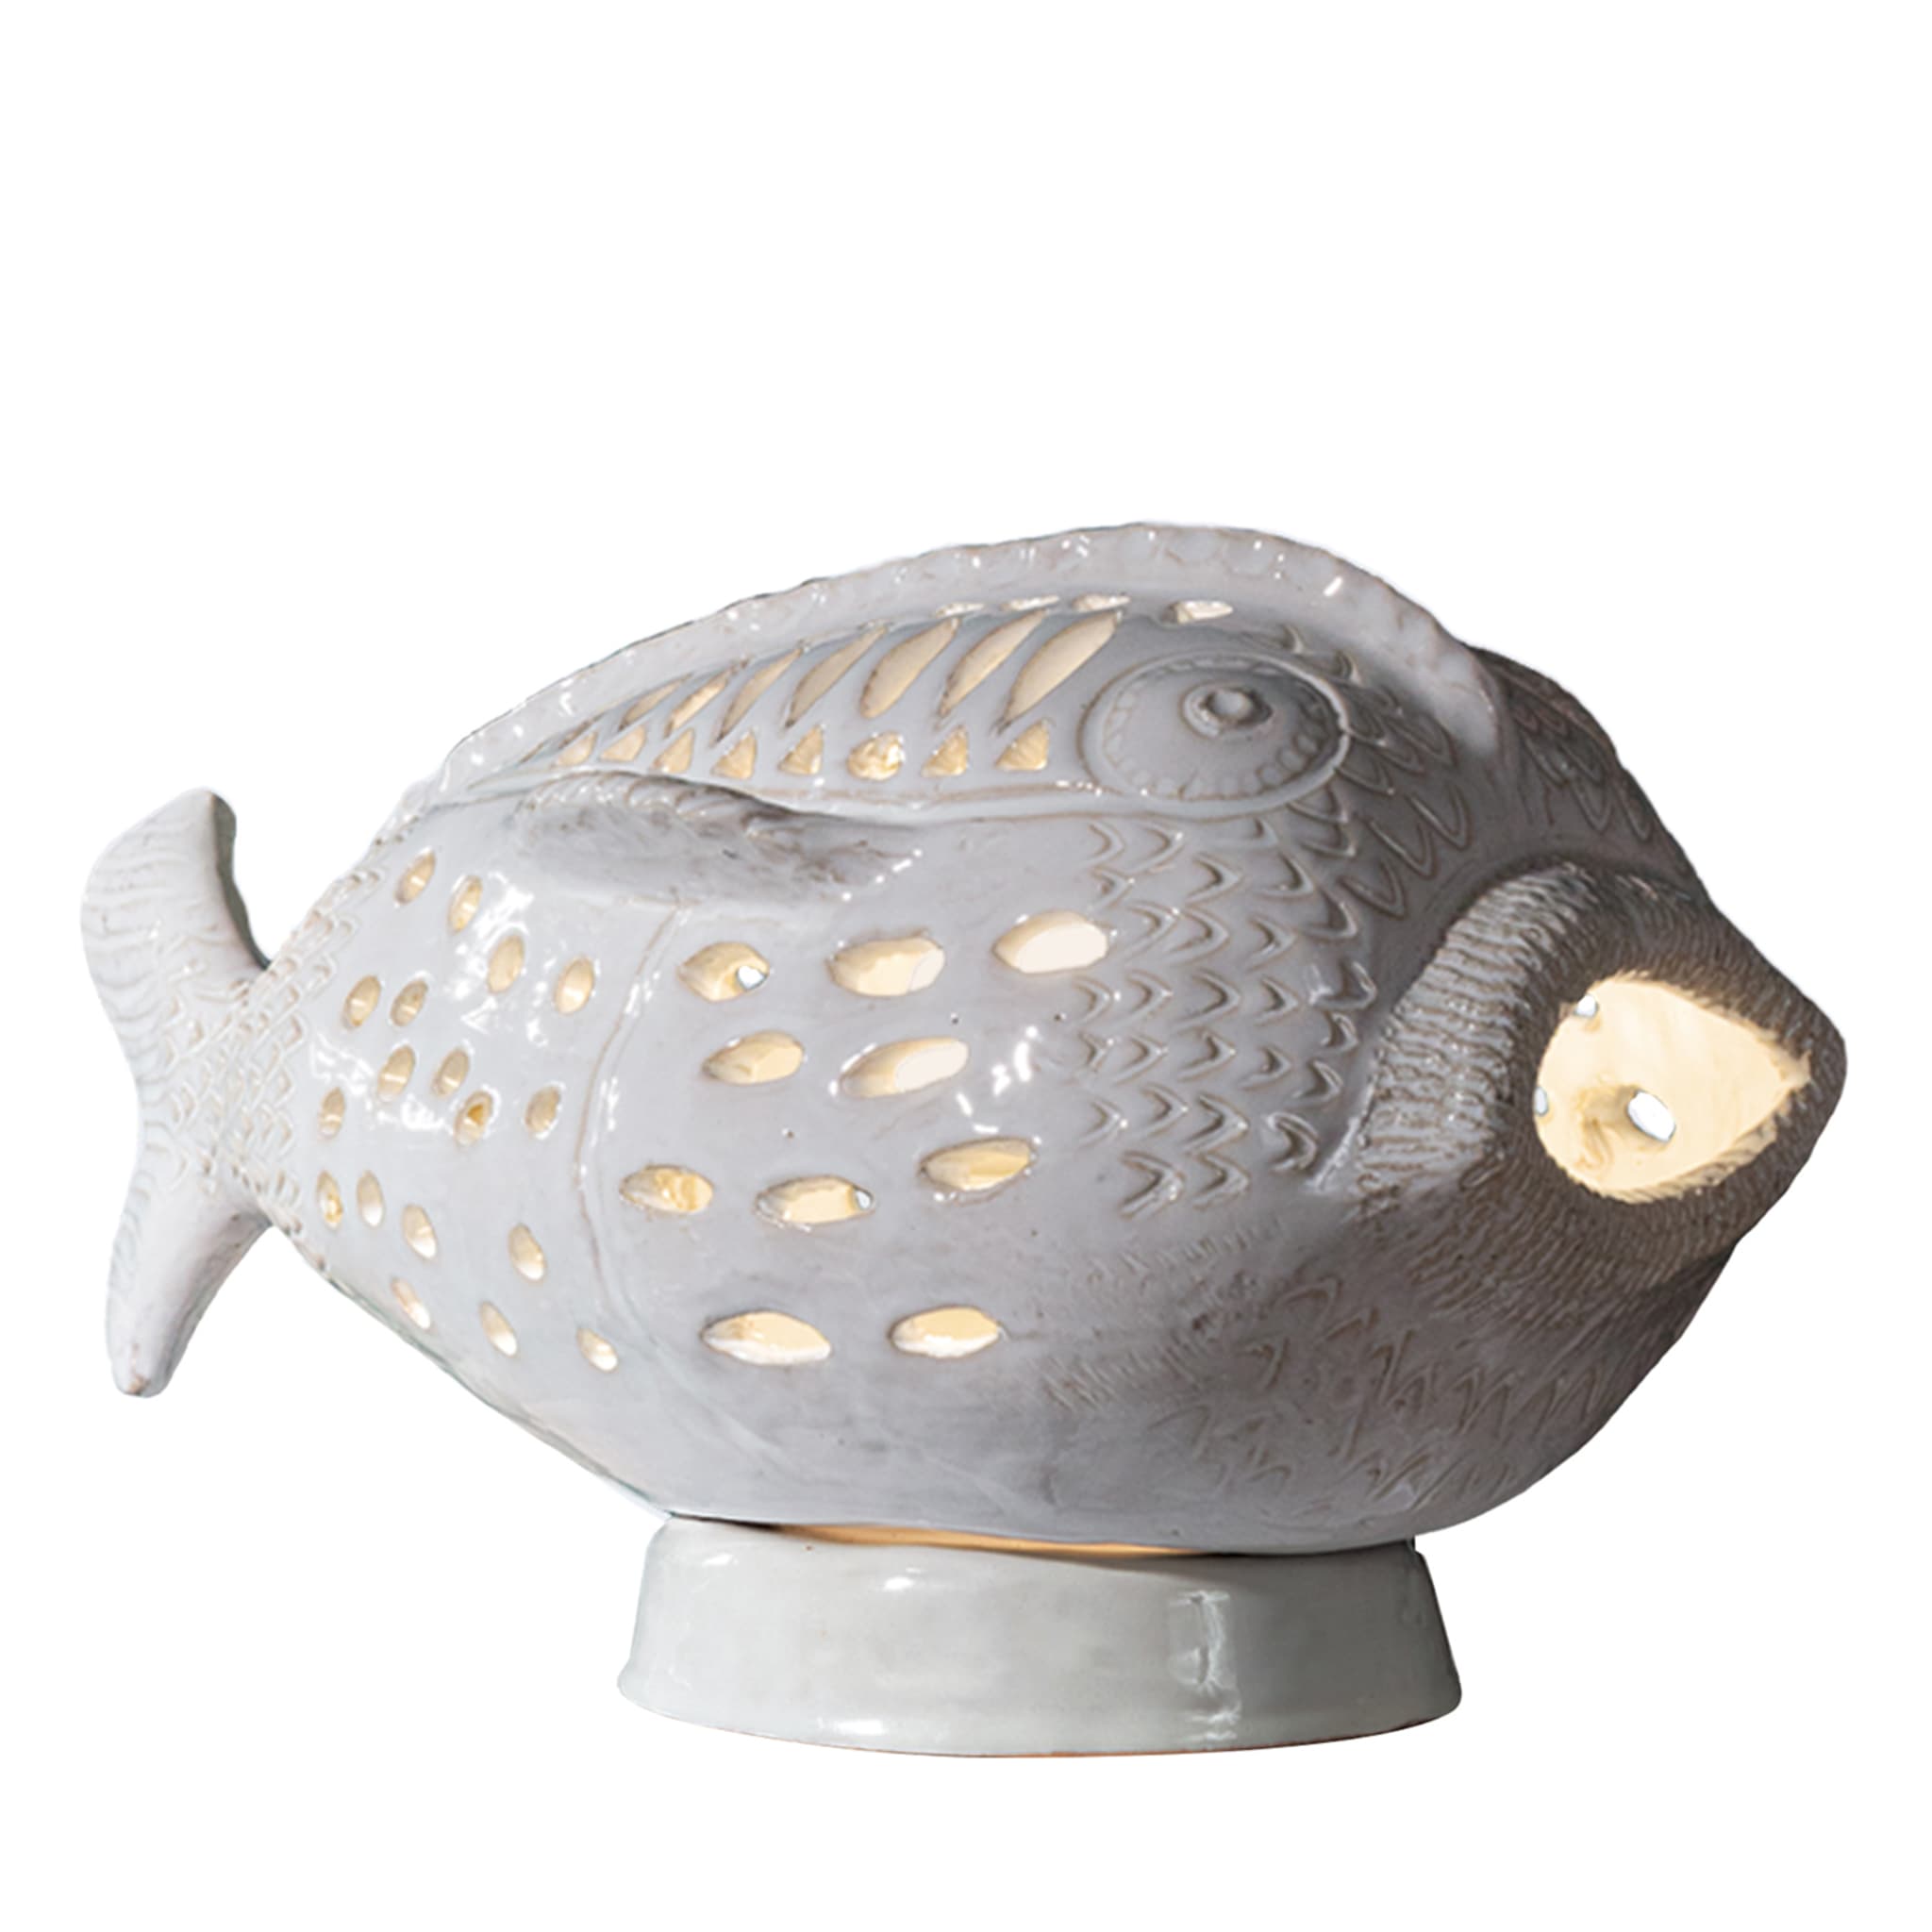 Perle Marine Pesce Pagliaccio N.6 White Table Lamp - Vue principale